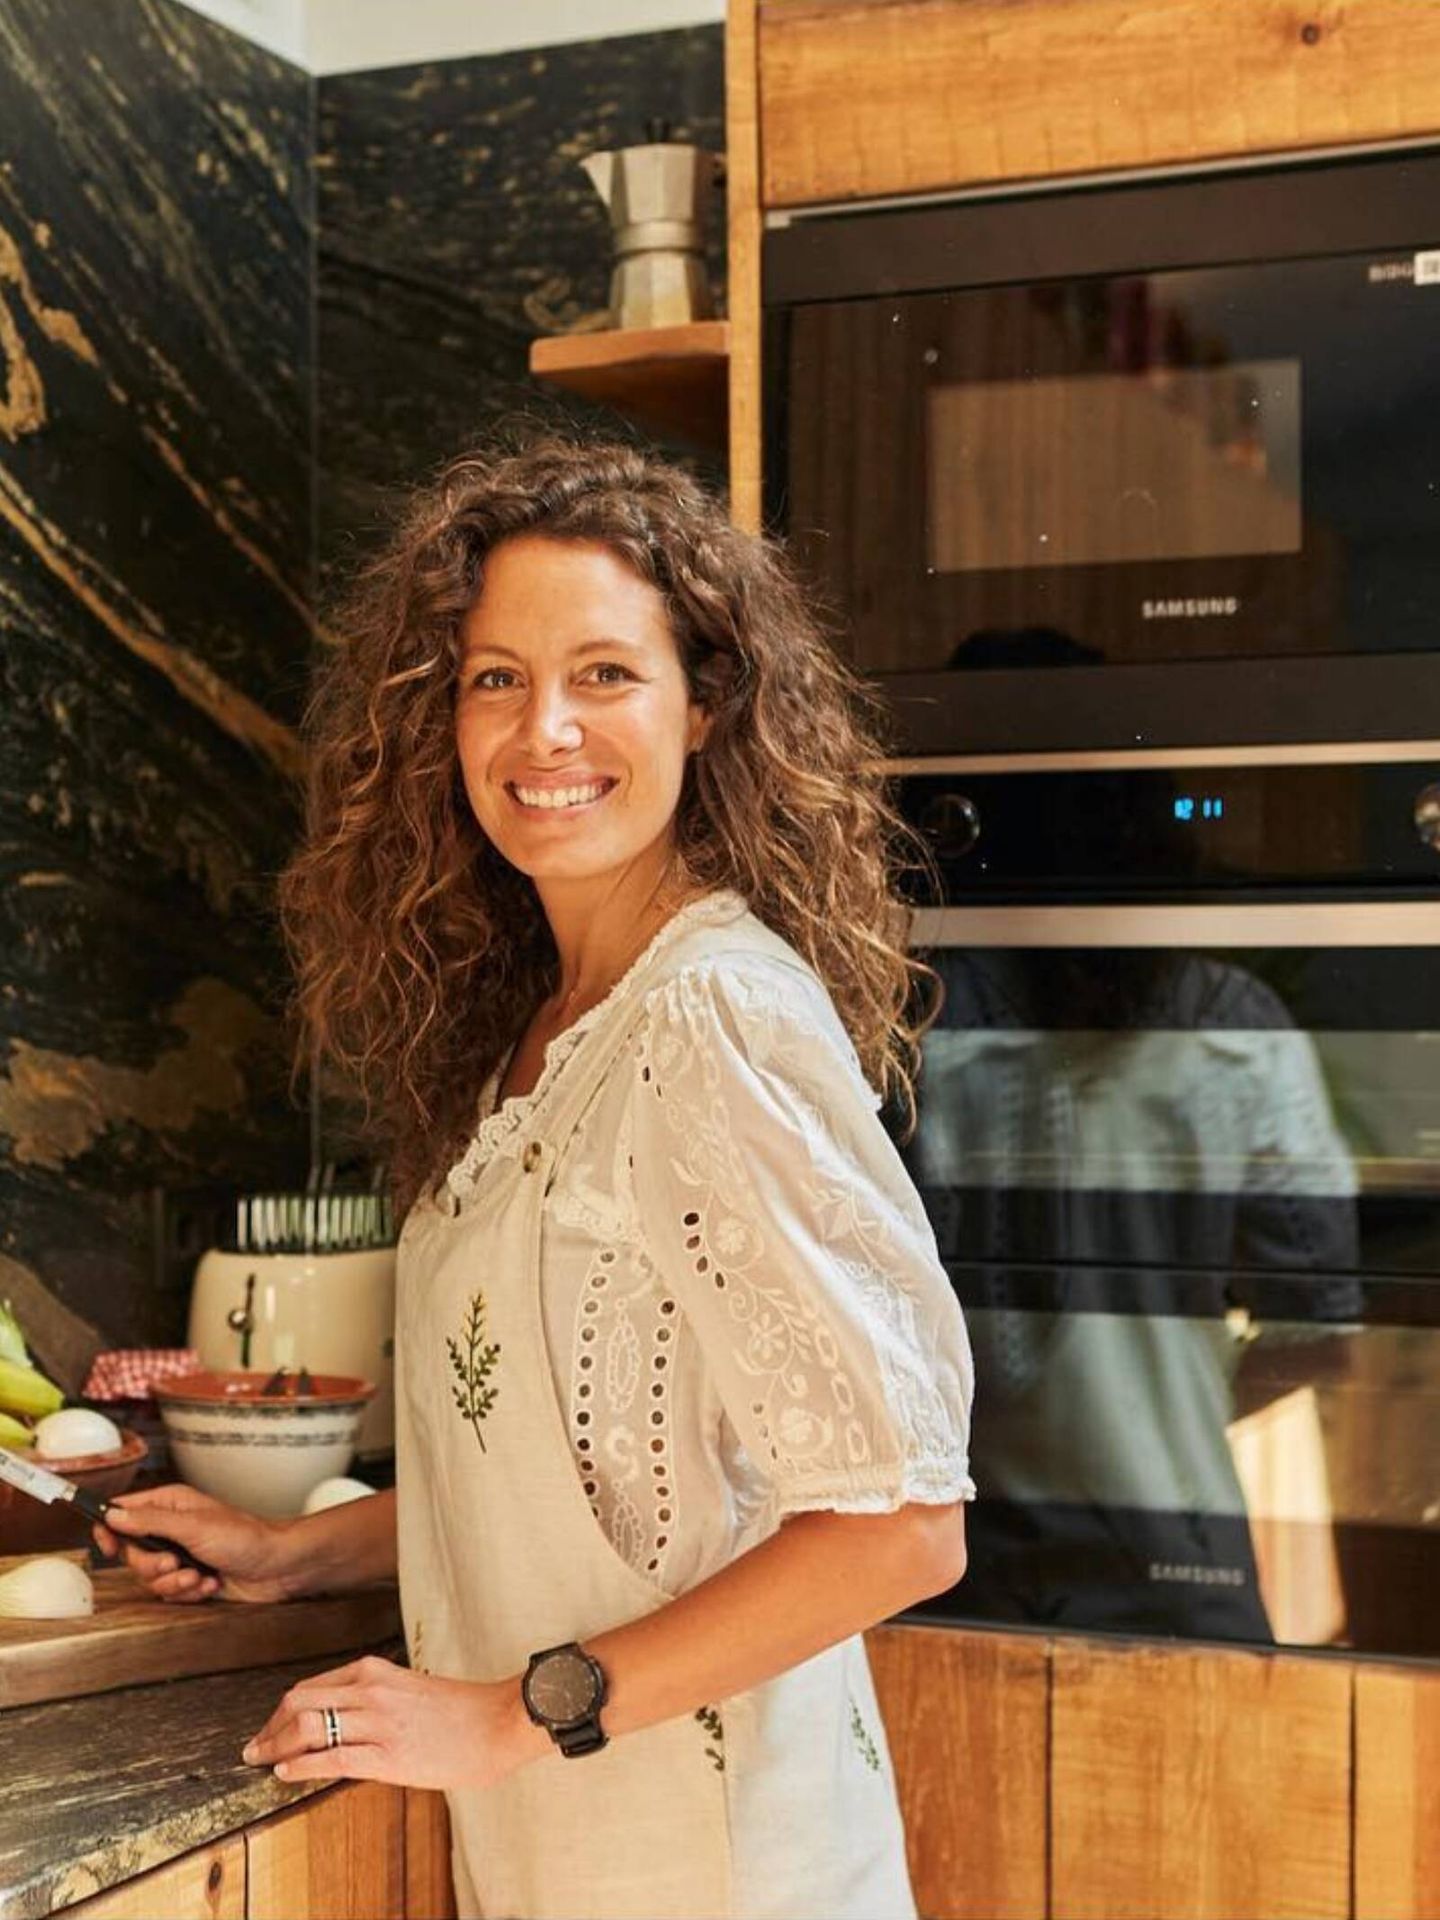  La presentadora Laura Madrueño, en su cocina. (Instagram/@laura_madrueno)